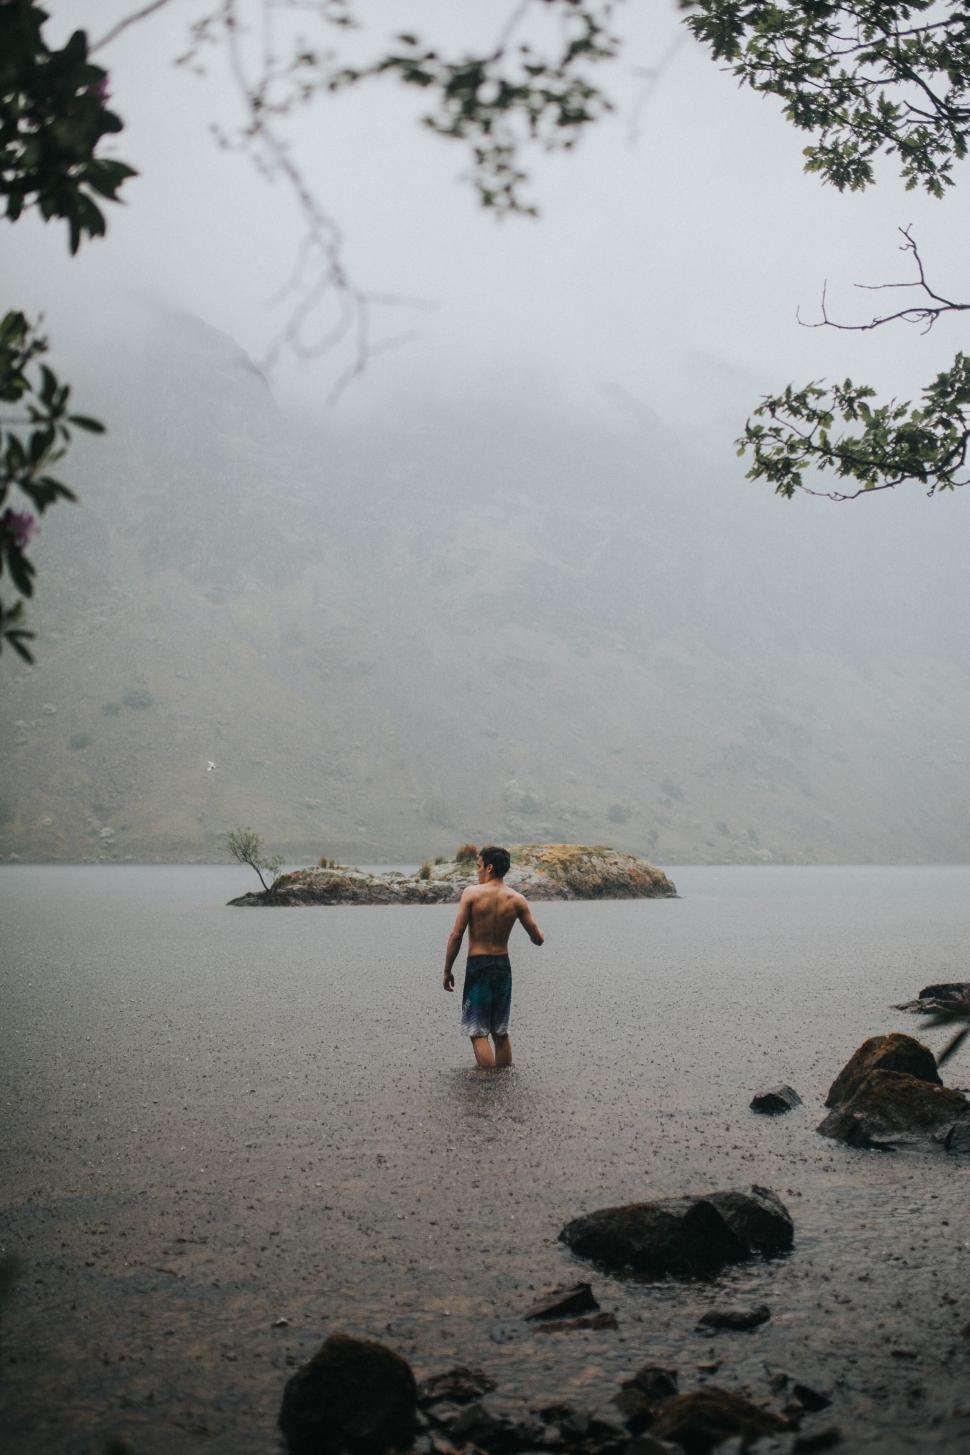 Free Image of Man wading in misty mountain lake 